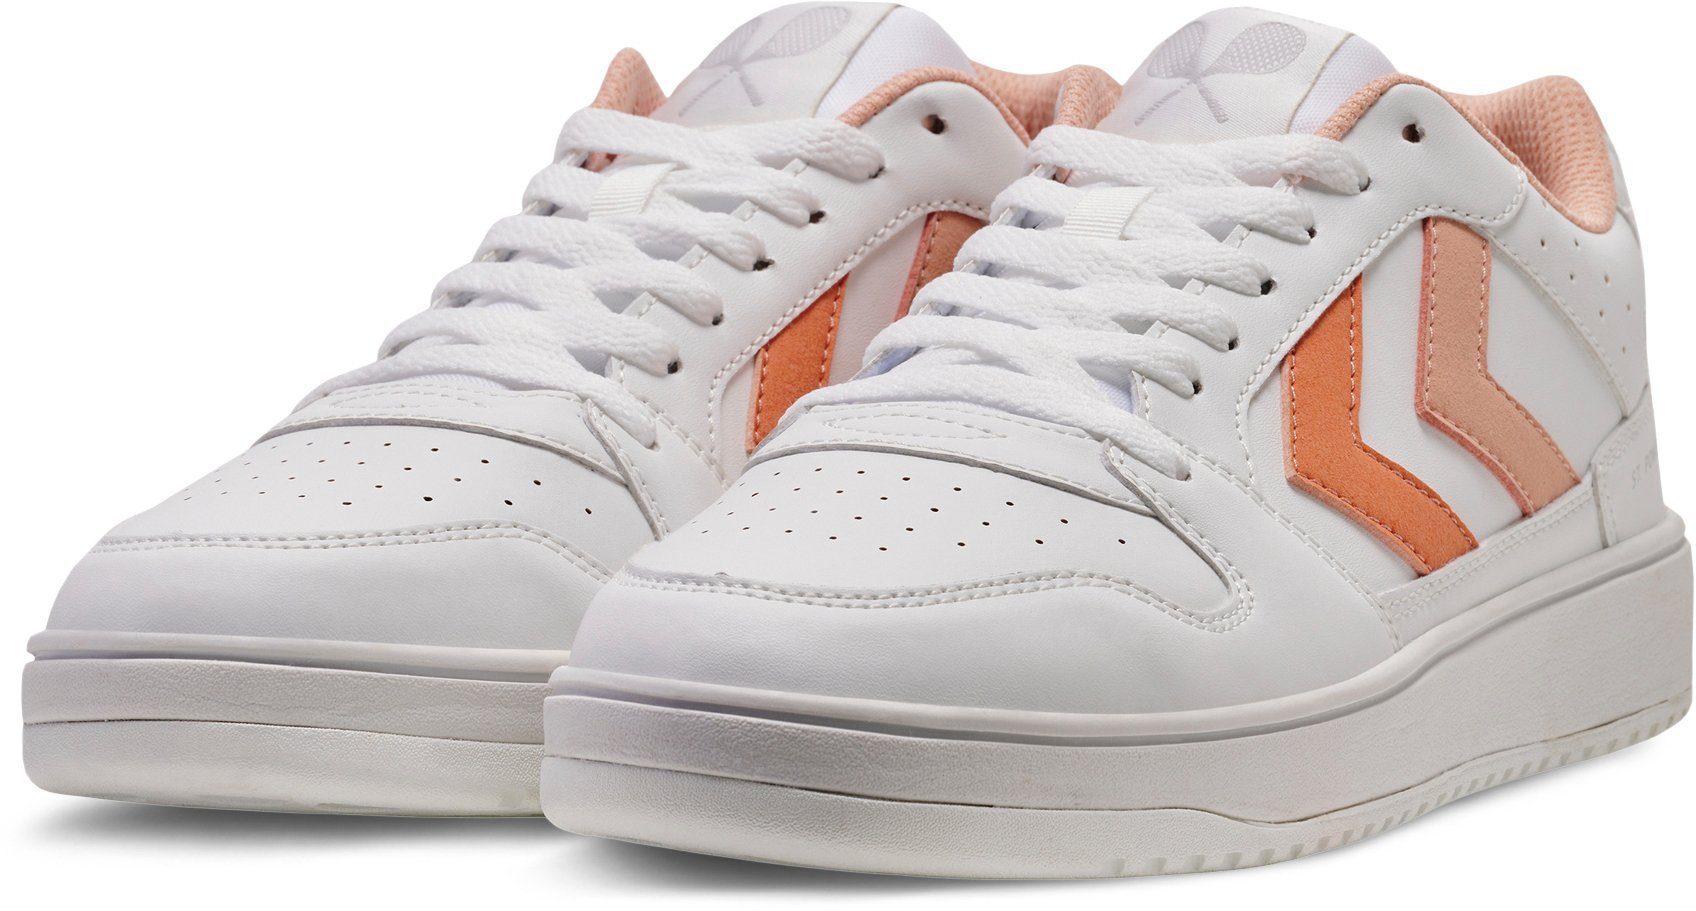 ST. hummel weiß-apricot WMNS POWER PLAY Sneaker